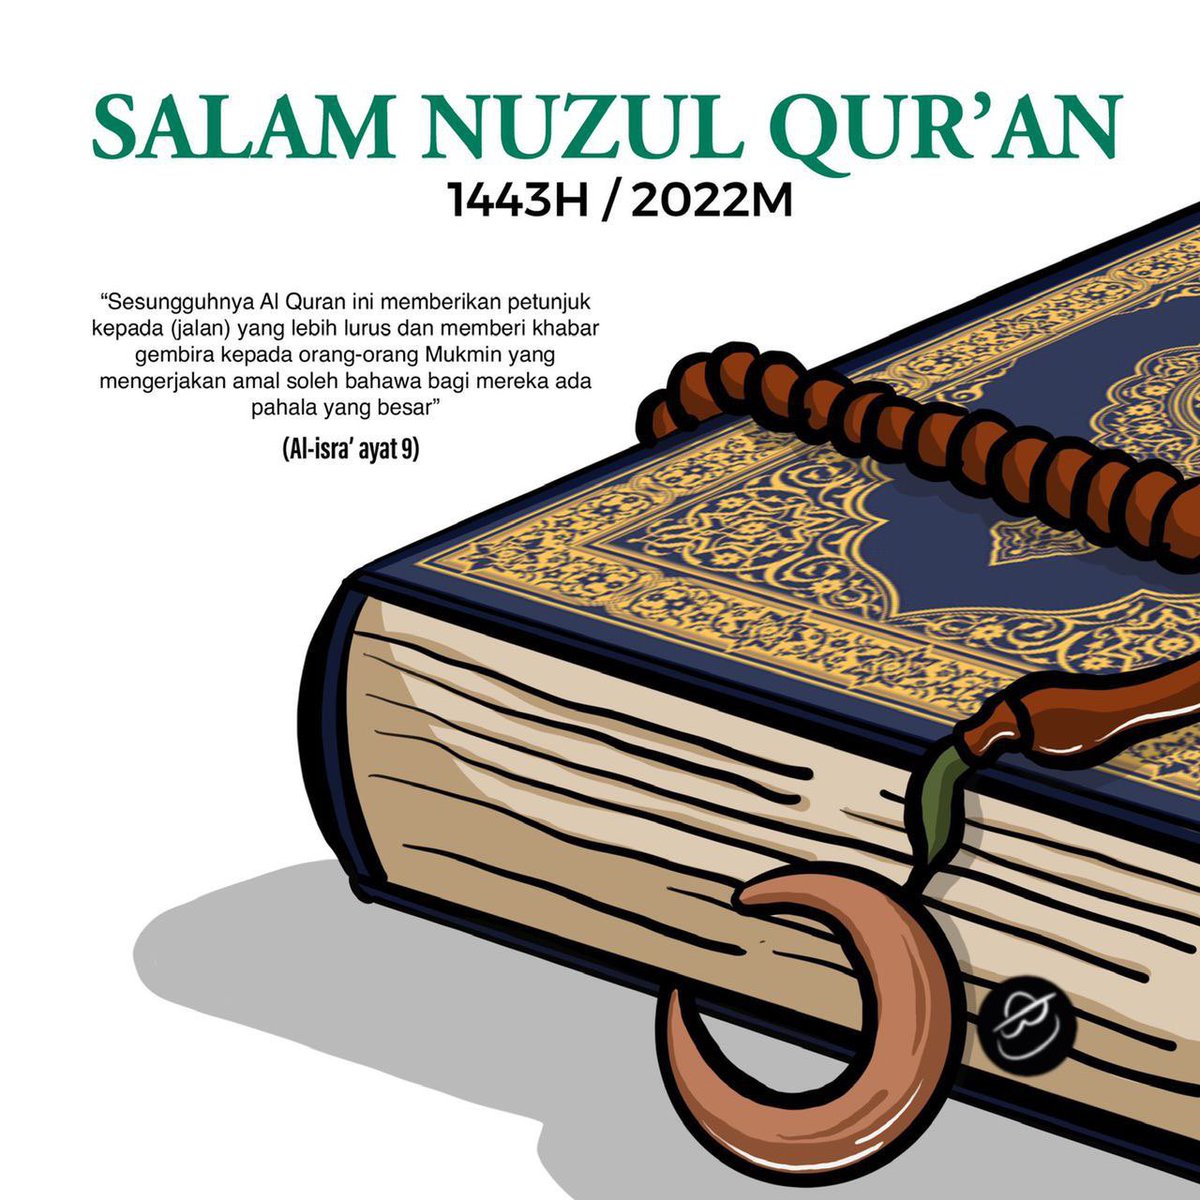 Bulan Ramadan ada sejarah besar dgn peristiwa agung turunnya Al-Quran sebagai panduan seluruh umat Islam. Mari hayati Al-Quran dgn membaca, melazimi & mengamalkannya kerana ia menyelamatkan kita dari pelbagai kerosakan. Salam Nuzul Quran semua ❤️

#ArtworkByArtortoise #NuzulQuran